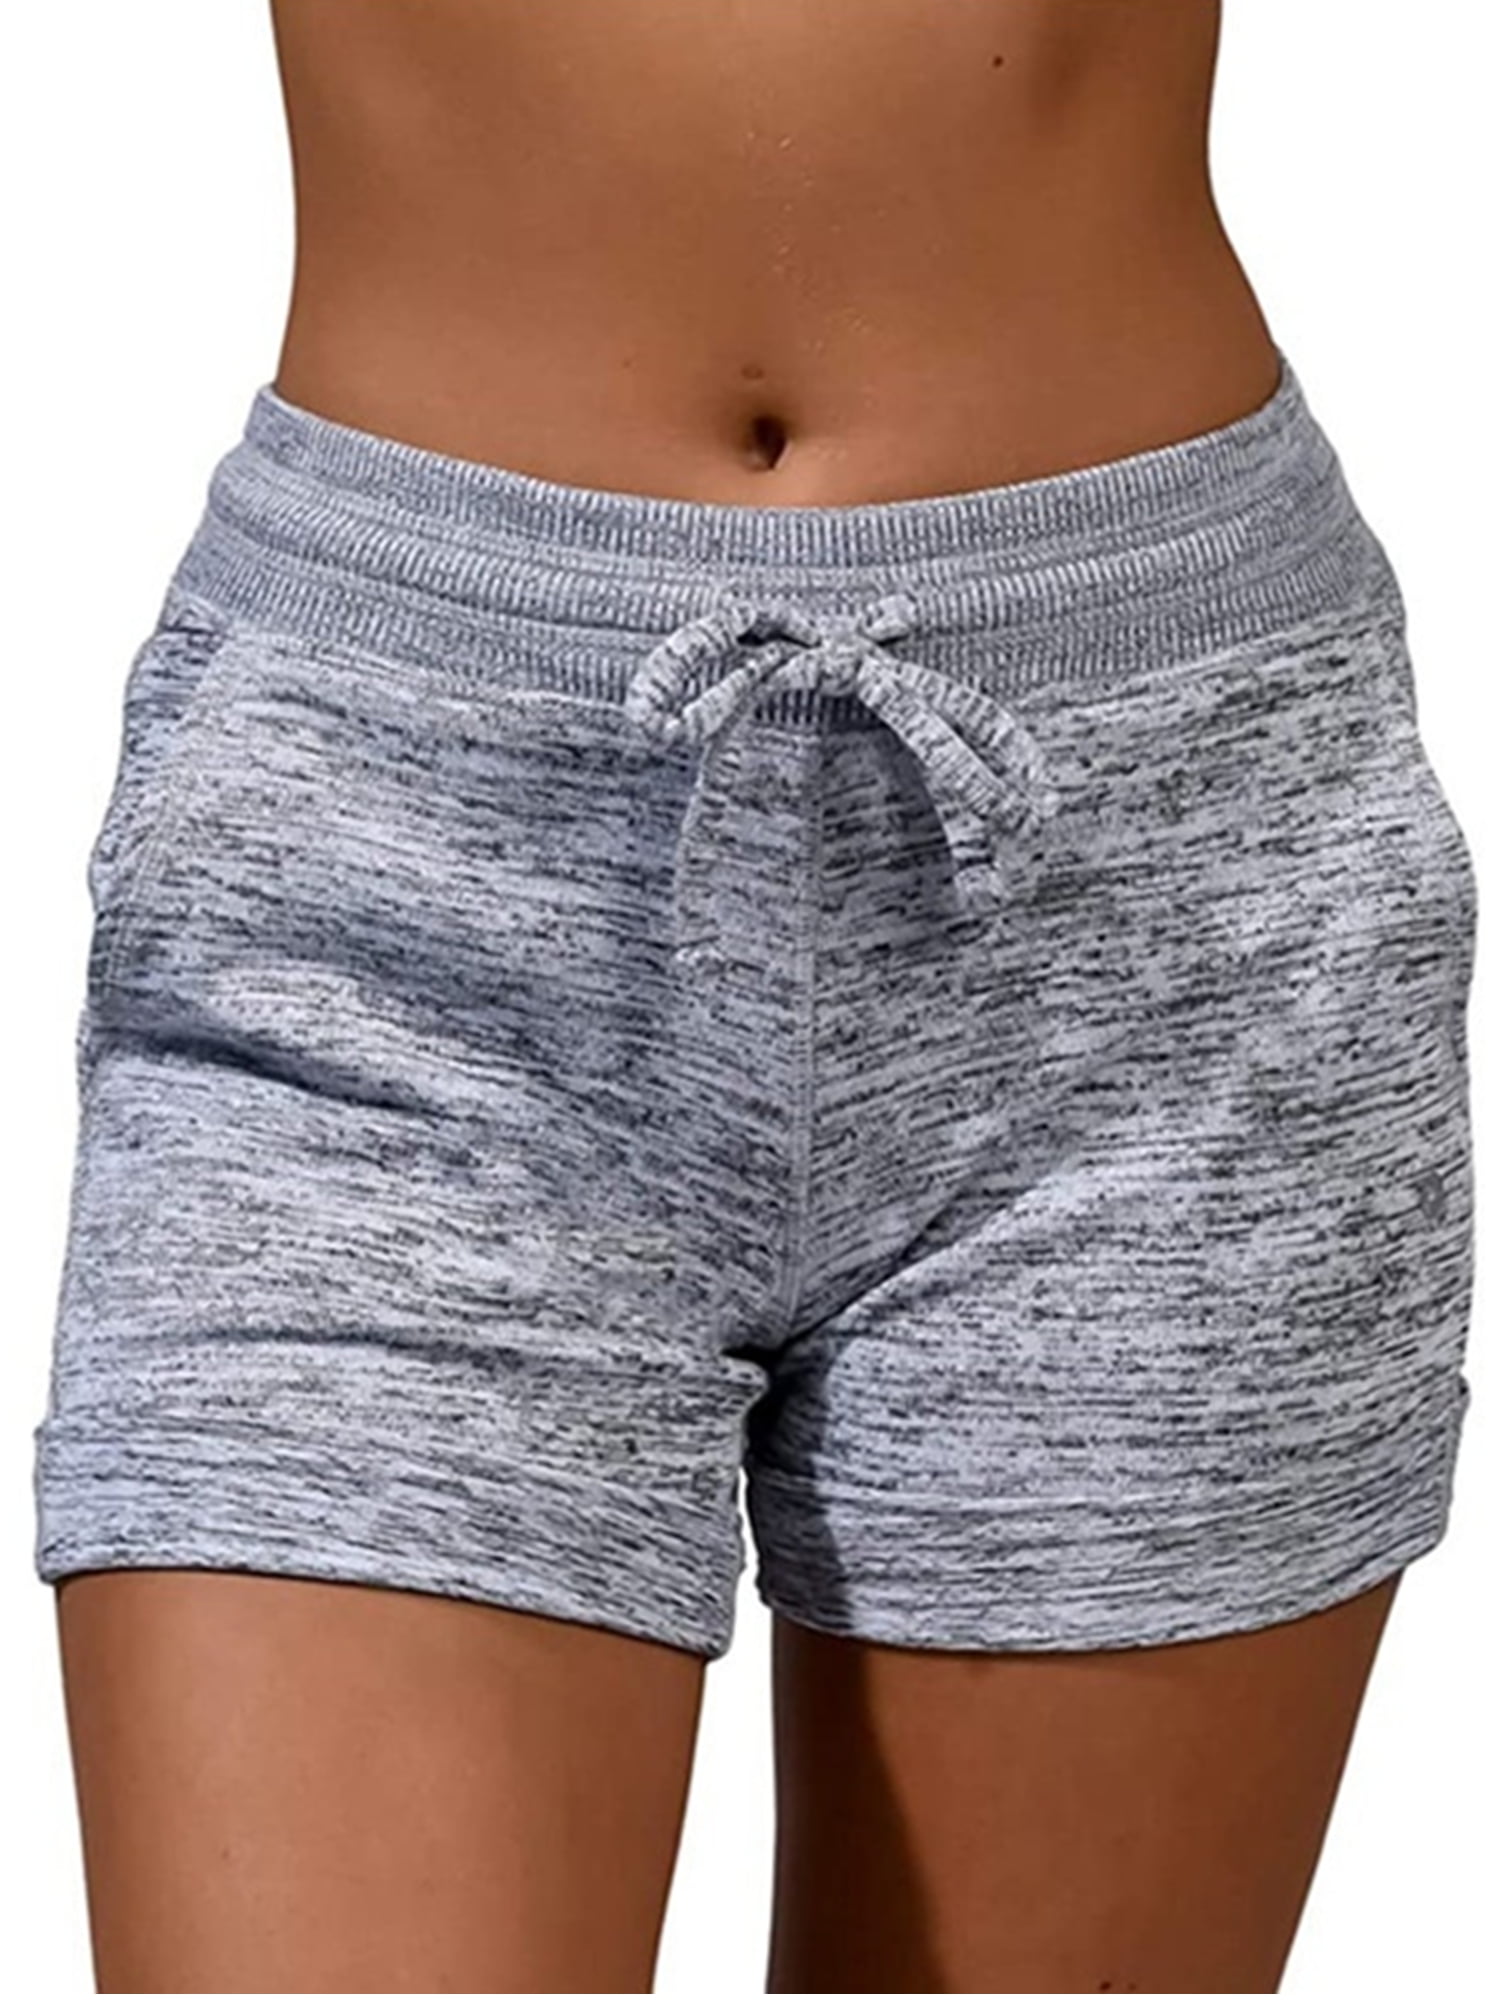 Lumento Womens Active Shorts Drawstring Waist Beach Shorts Pants Summer ...